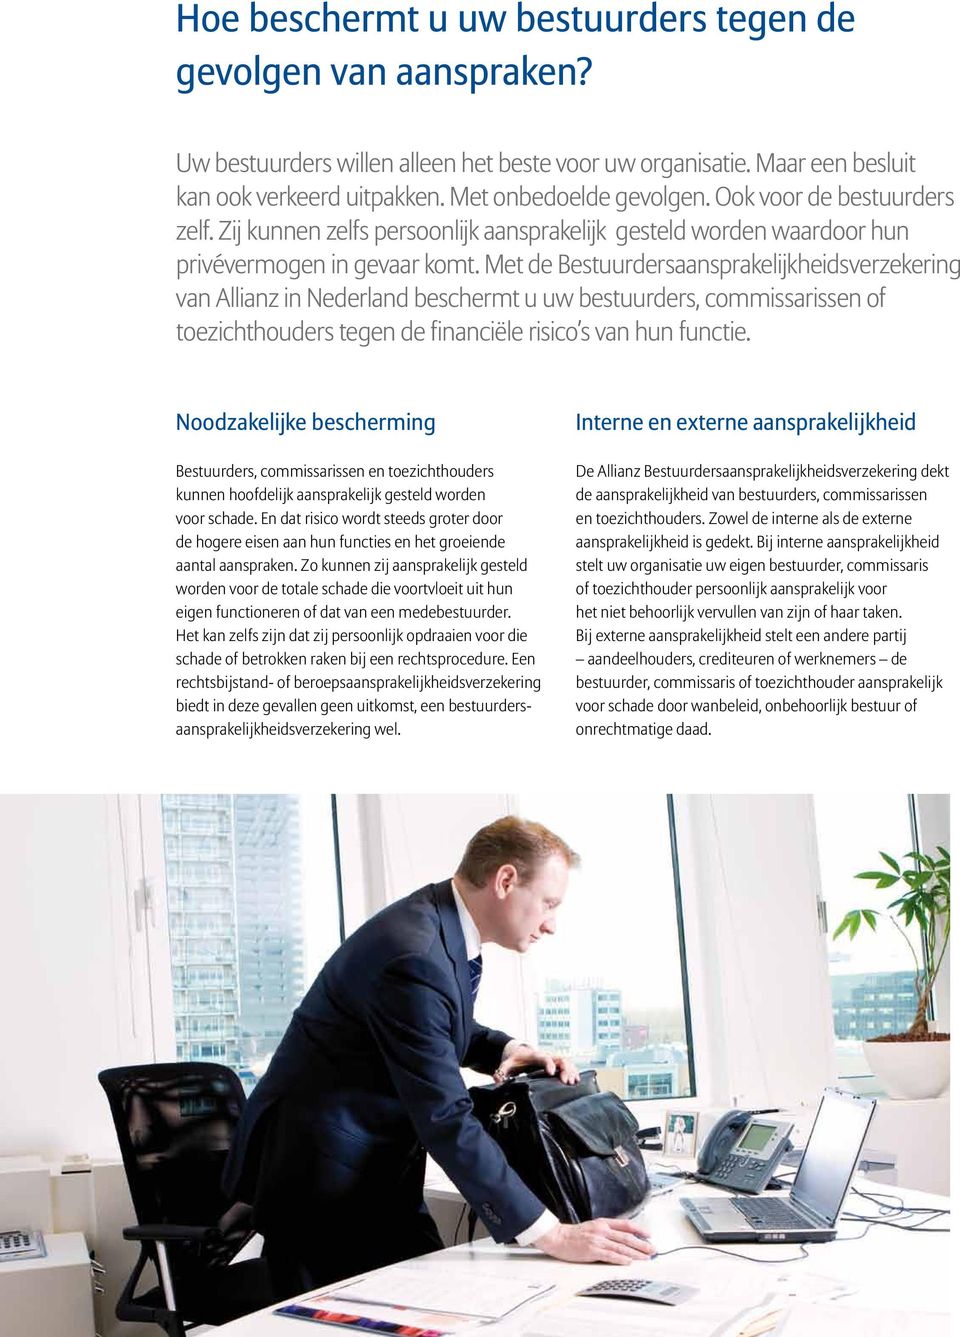 Met de Bestuurdersaansprakelijkheidsverzekering van Allianz in Nederland beschermt u uw bestuurders, commissarissen of toezichthouders tegen de financiële risico s van hun functie.